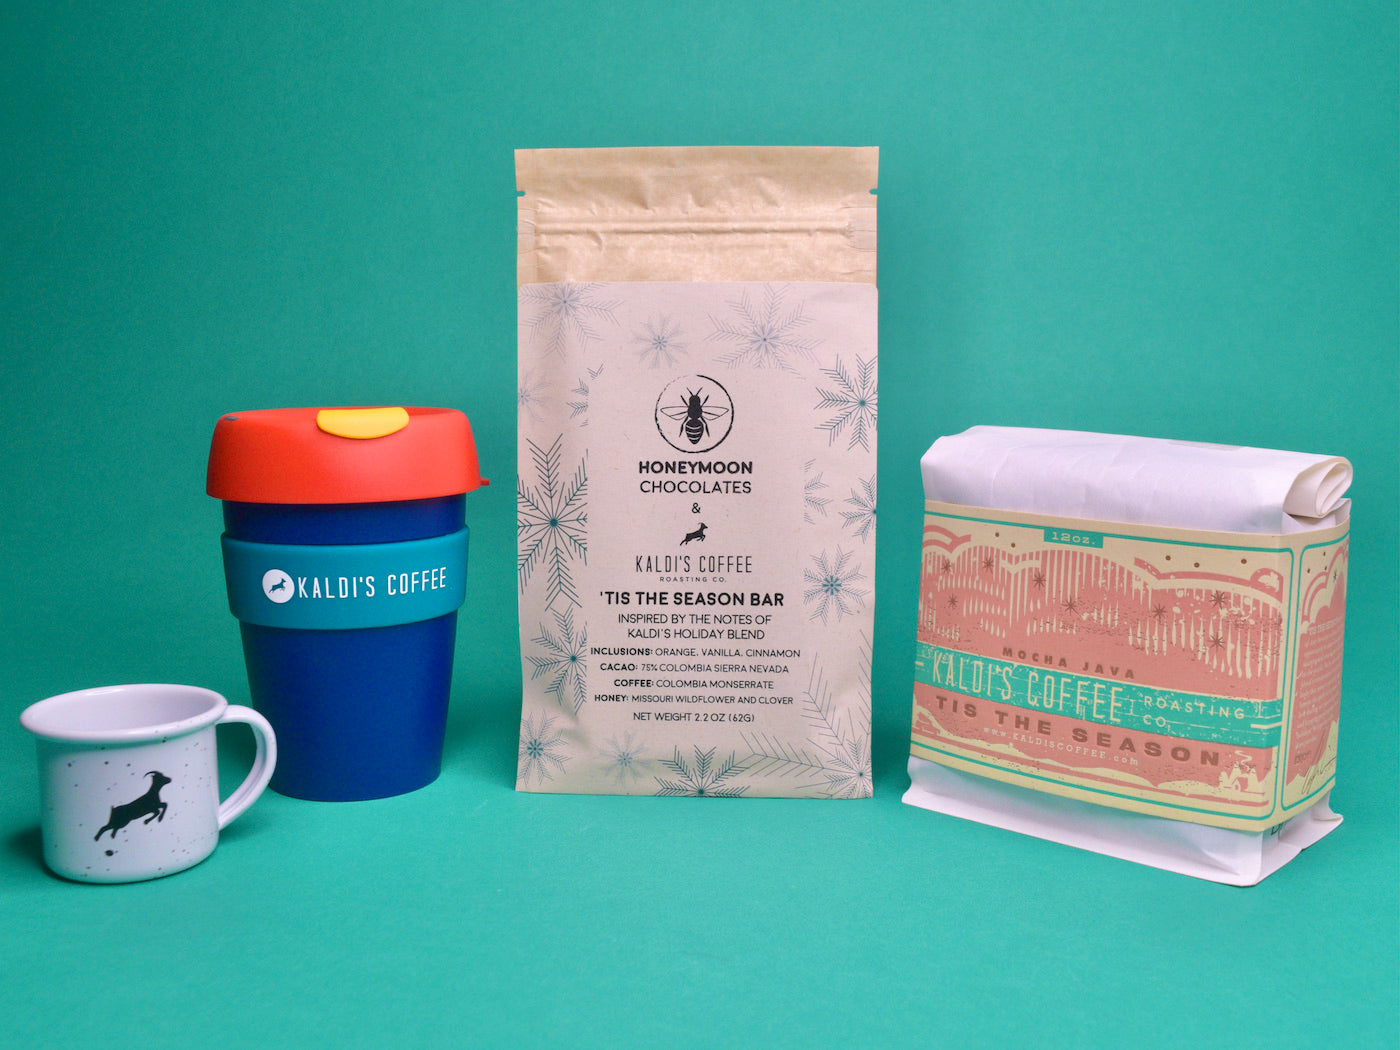 Coffee Mug Ornament, Plastic Teal Keep Cup, 'Tis the Season Chocolate Bar, and 12oz 'Tis the Season Coffee Bag